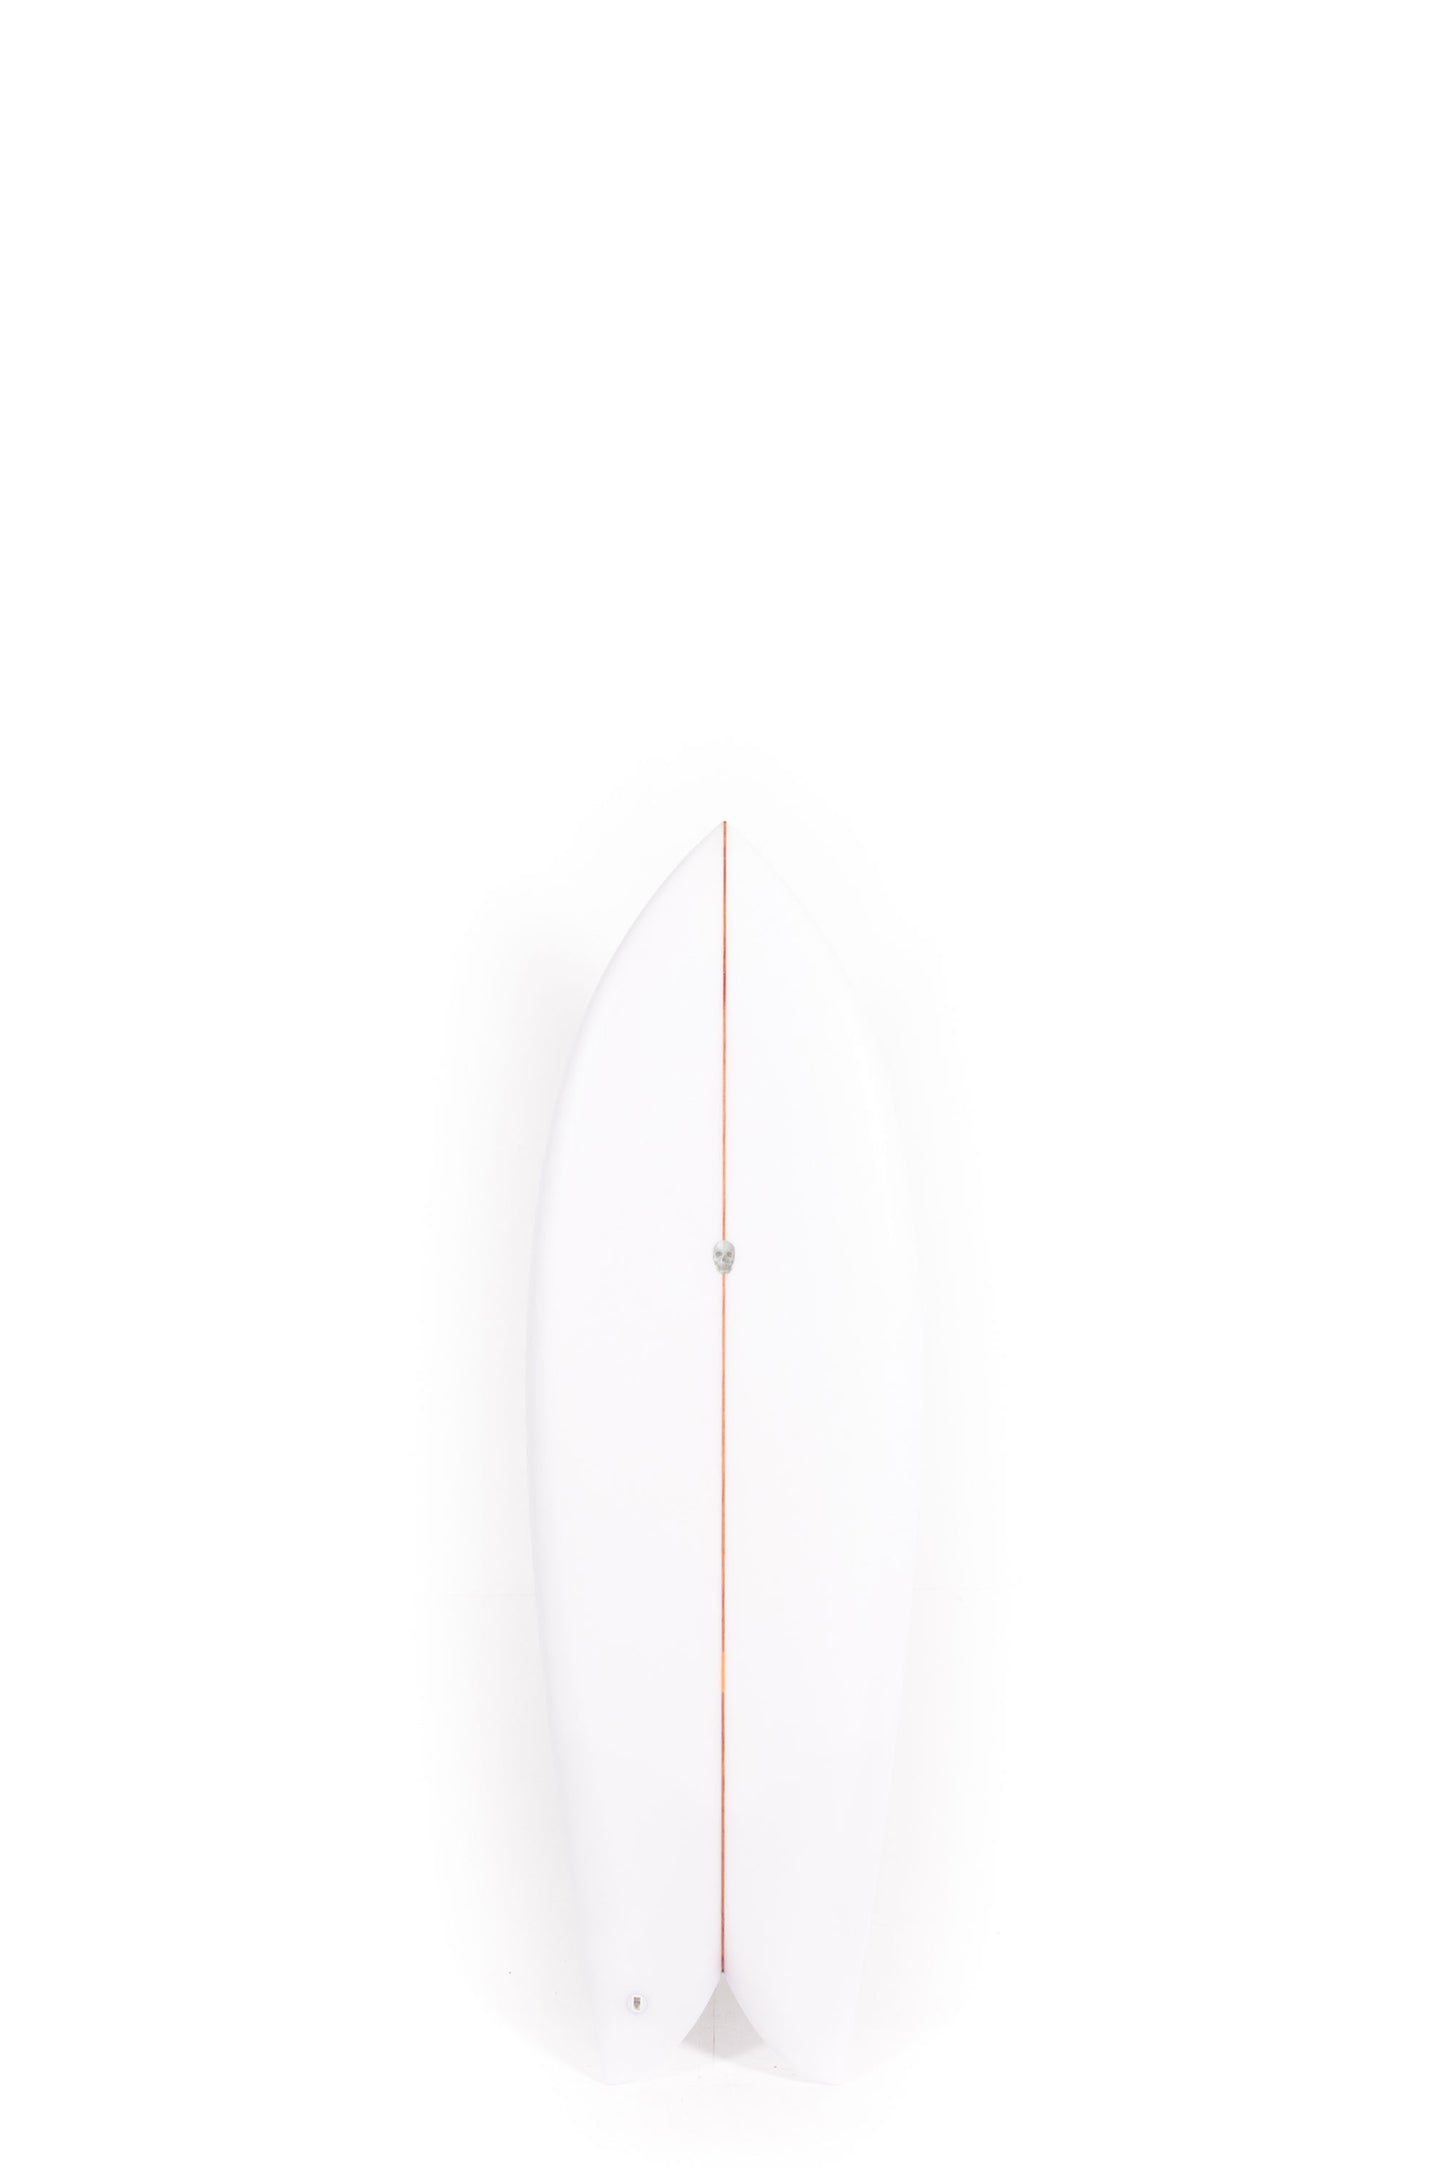 Pukas Surf Shop - Christenson Surfboards - CHRIS FISH - 5'6" x 20 7/8 x 2 7/16 - CX05795